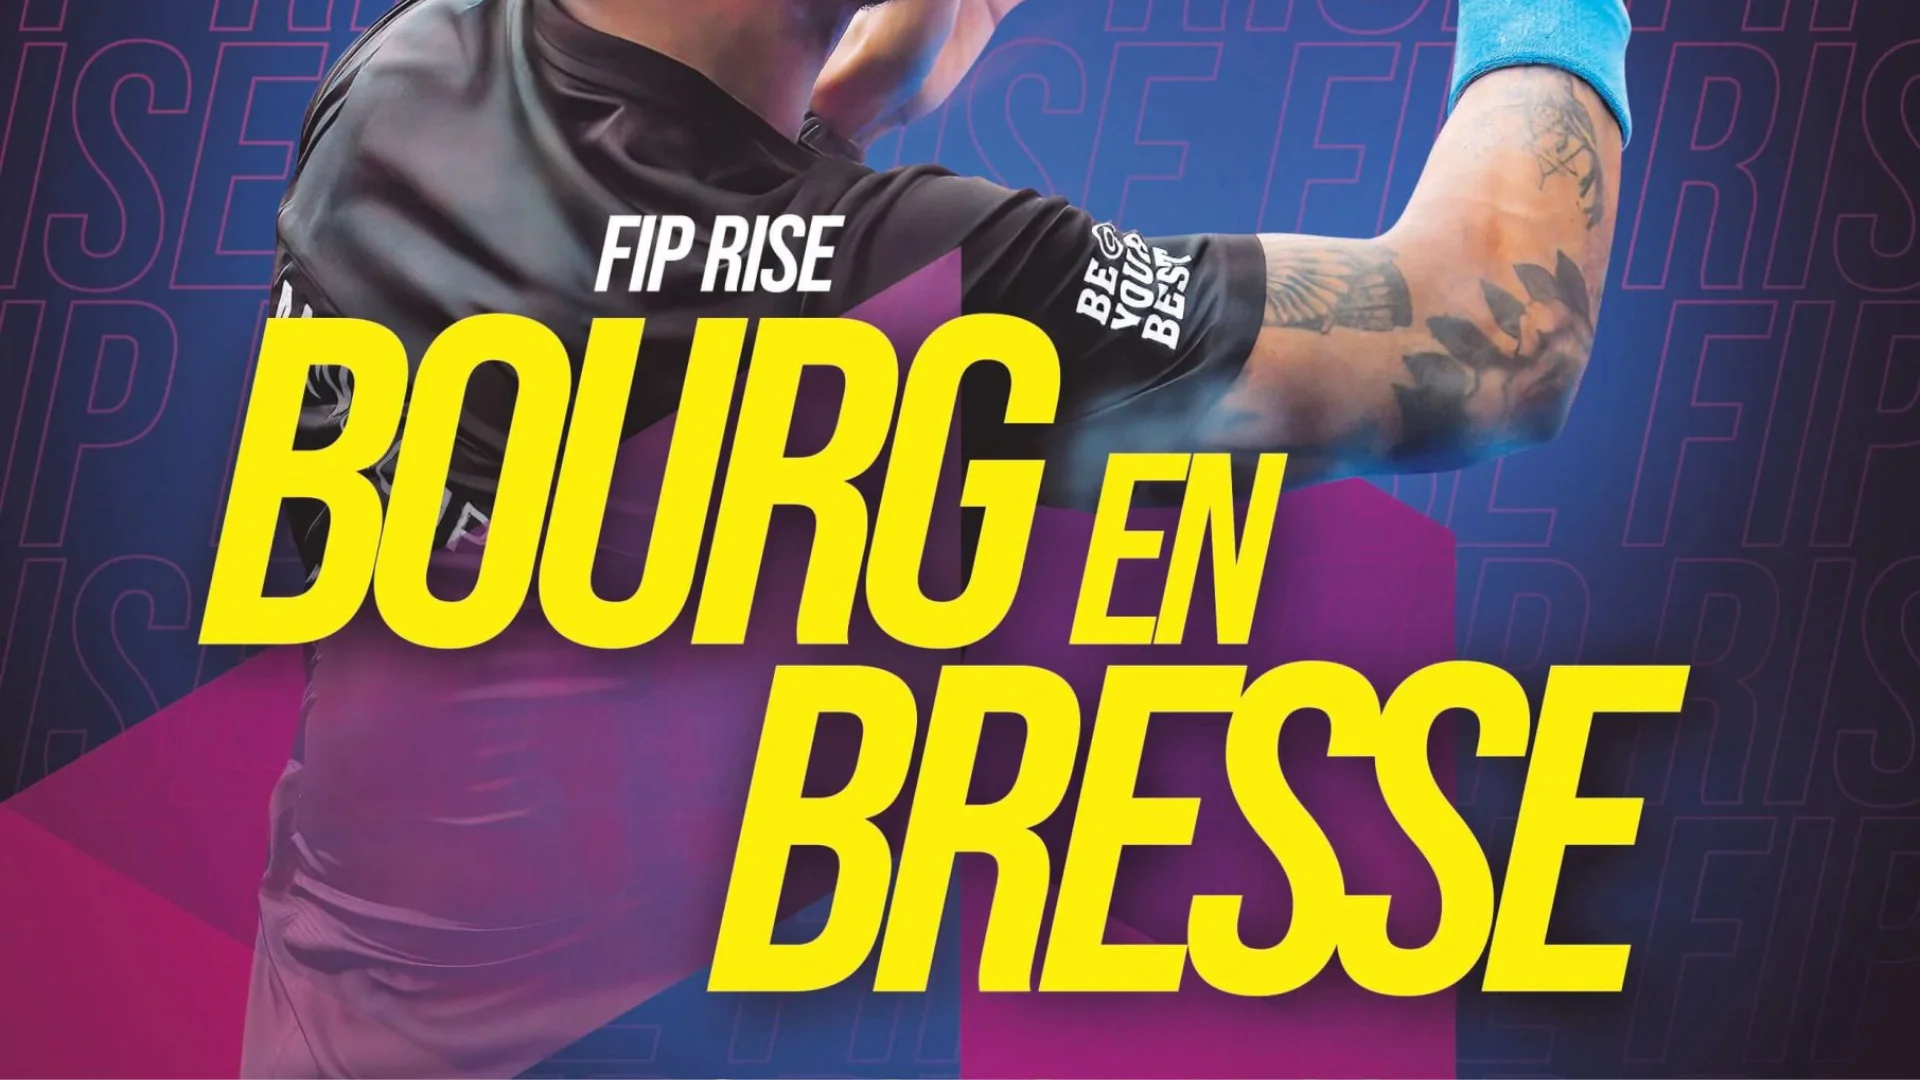 FIP Bourg en Bresse viser 16 9